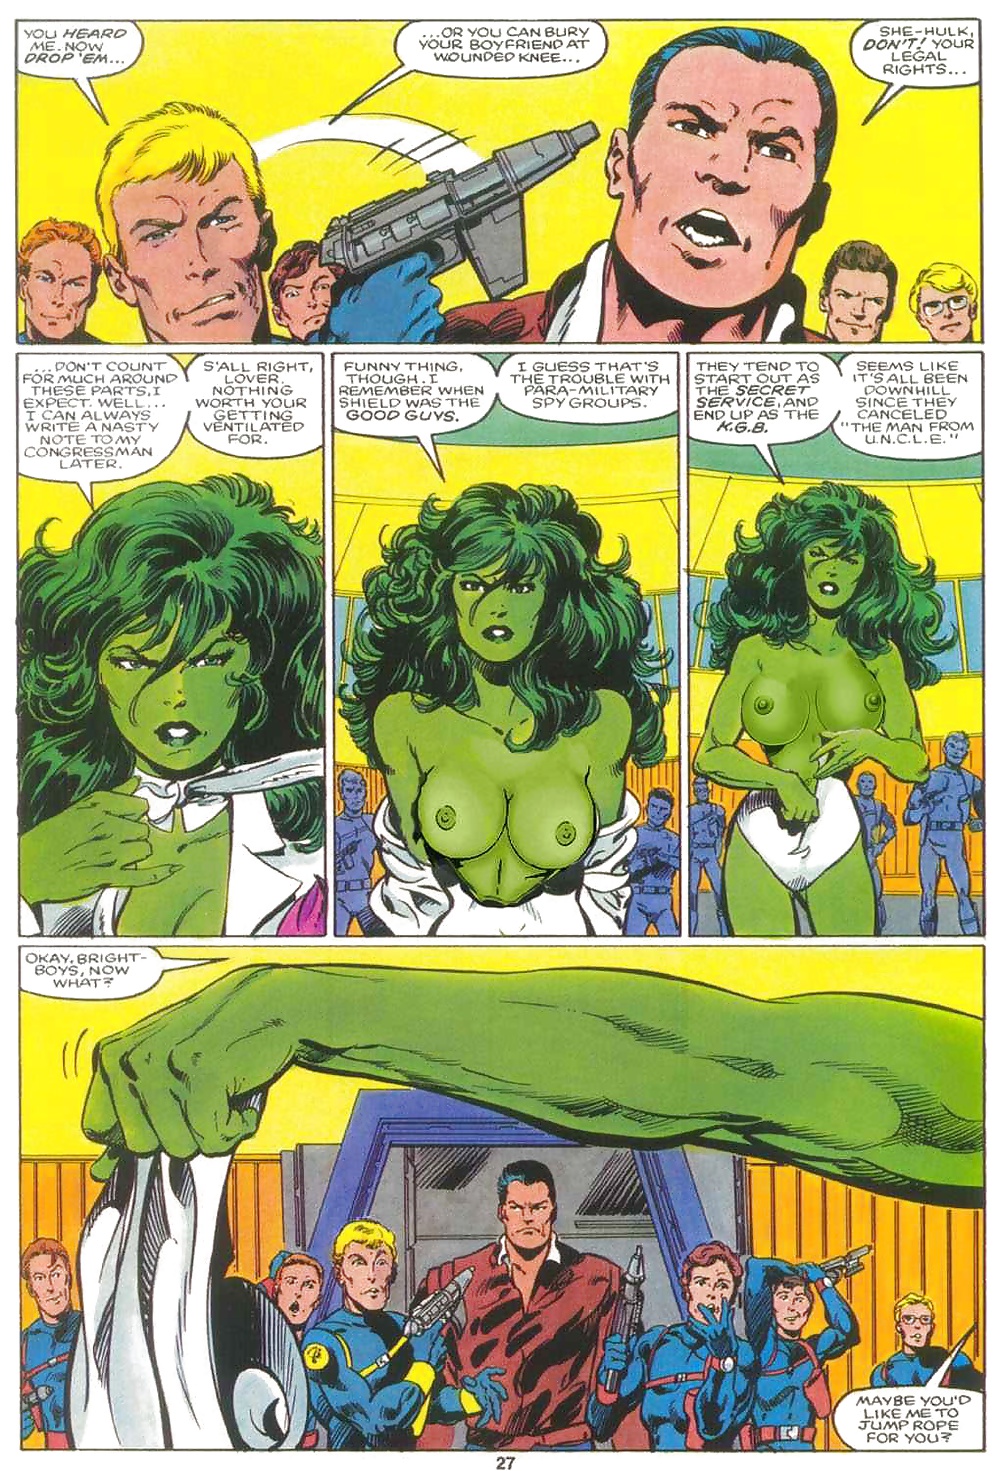 She-Hulk nuff said! #32632580